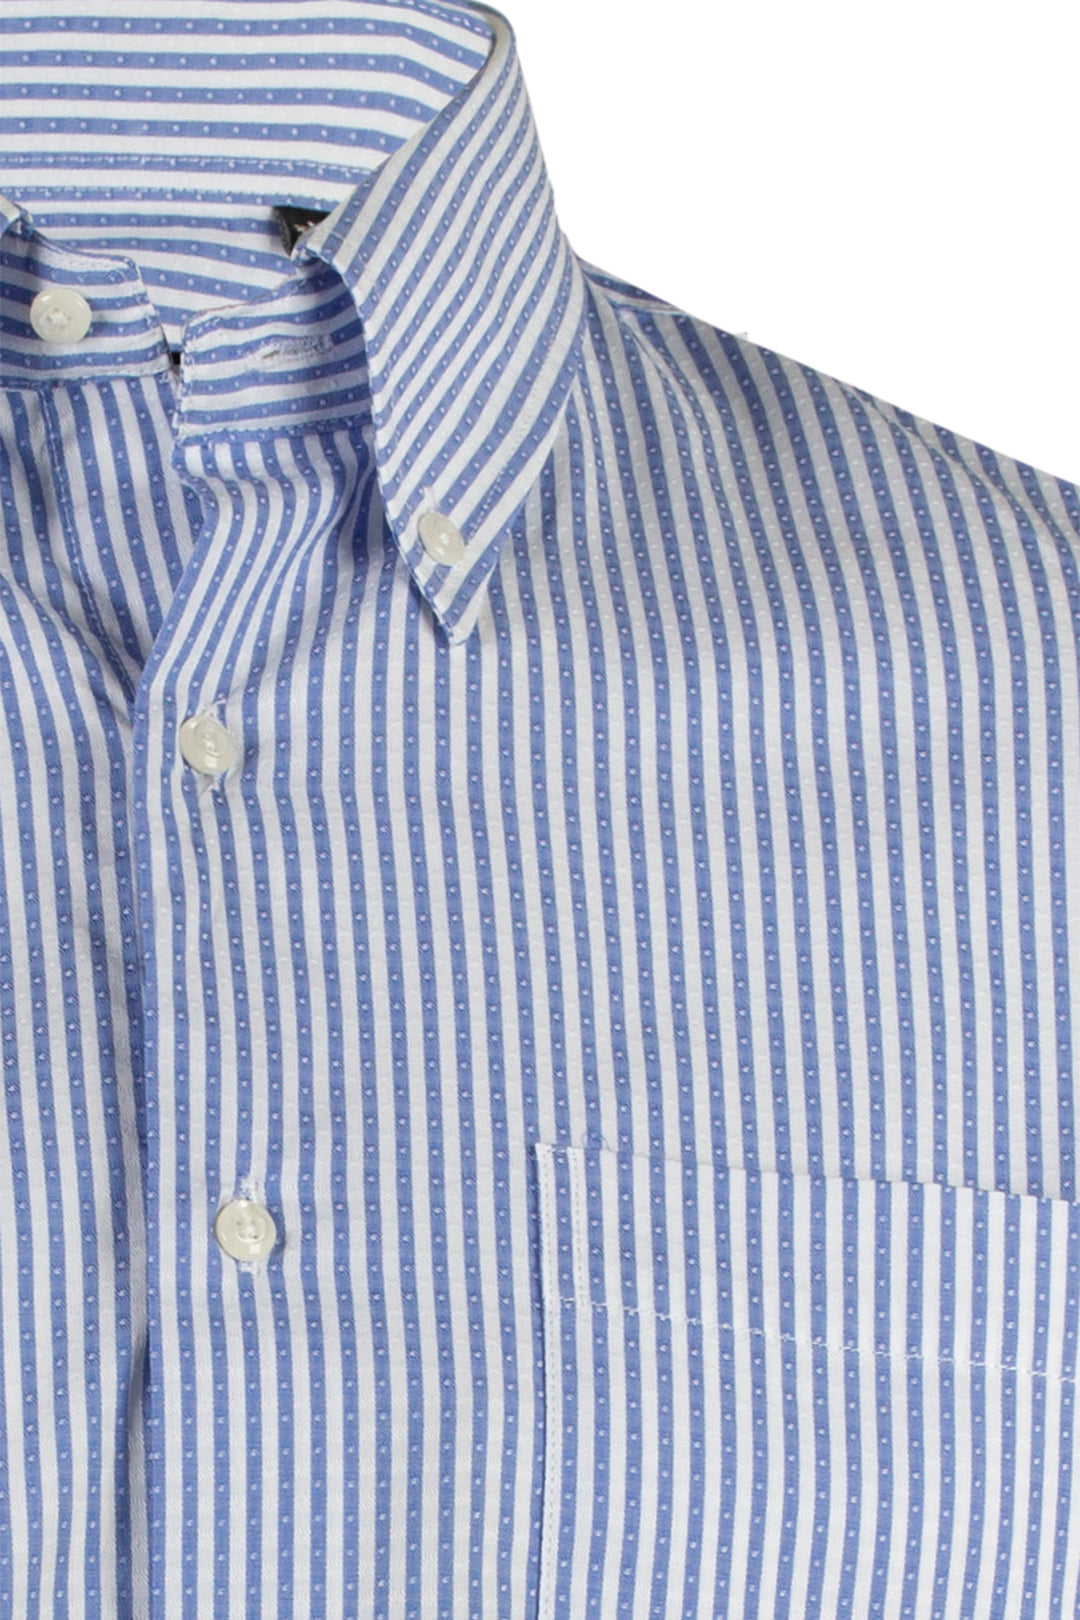 Camicia da uomo a righe bianche e azzurre in cotone operato